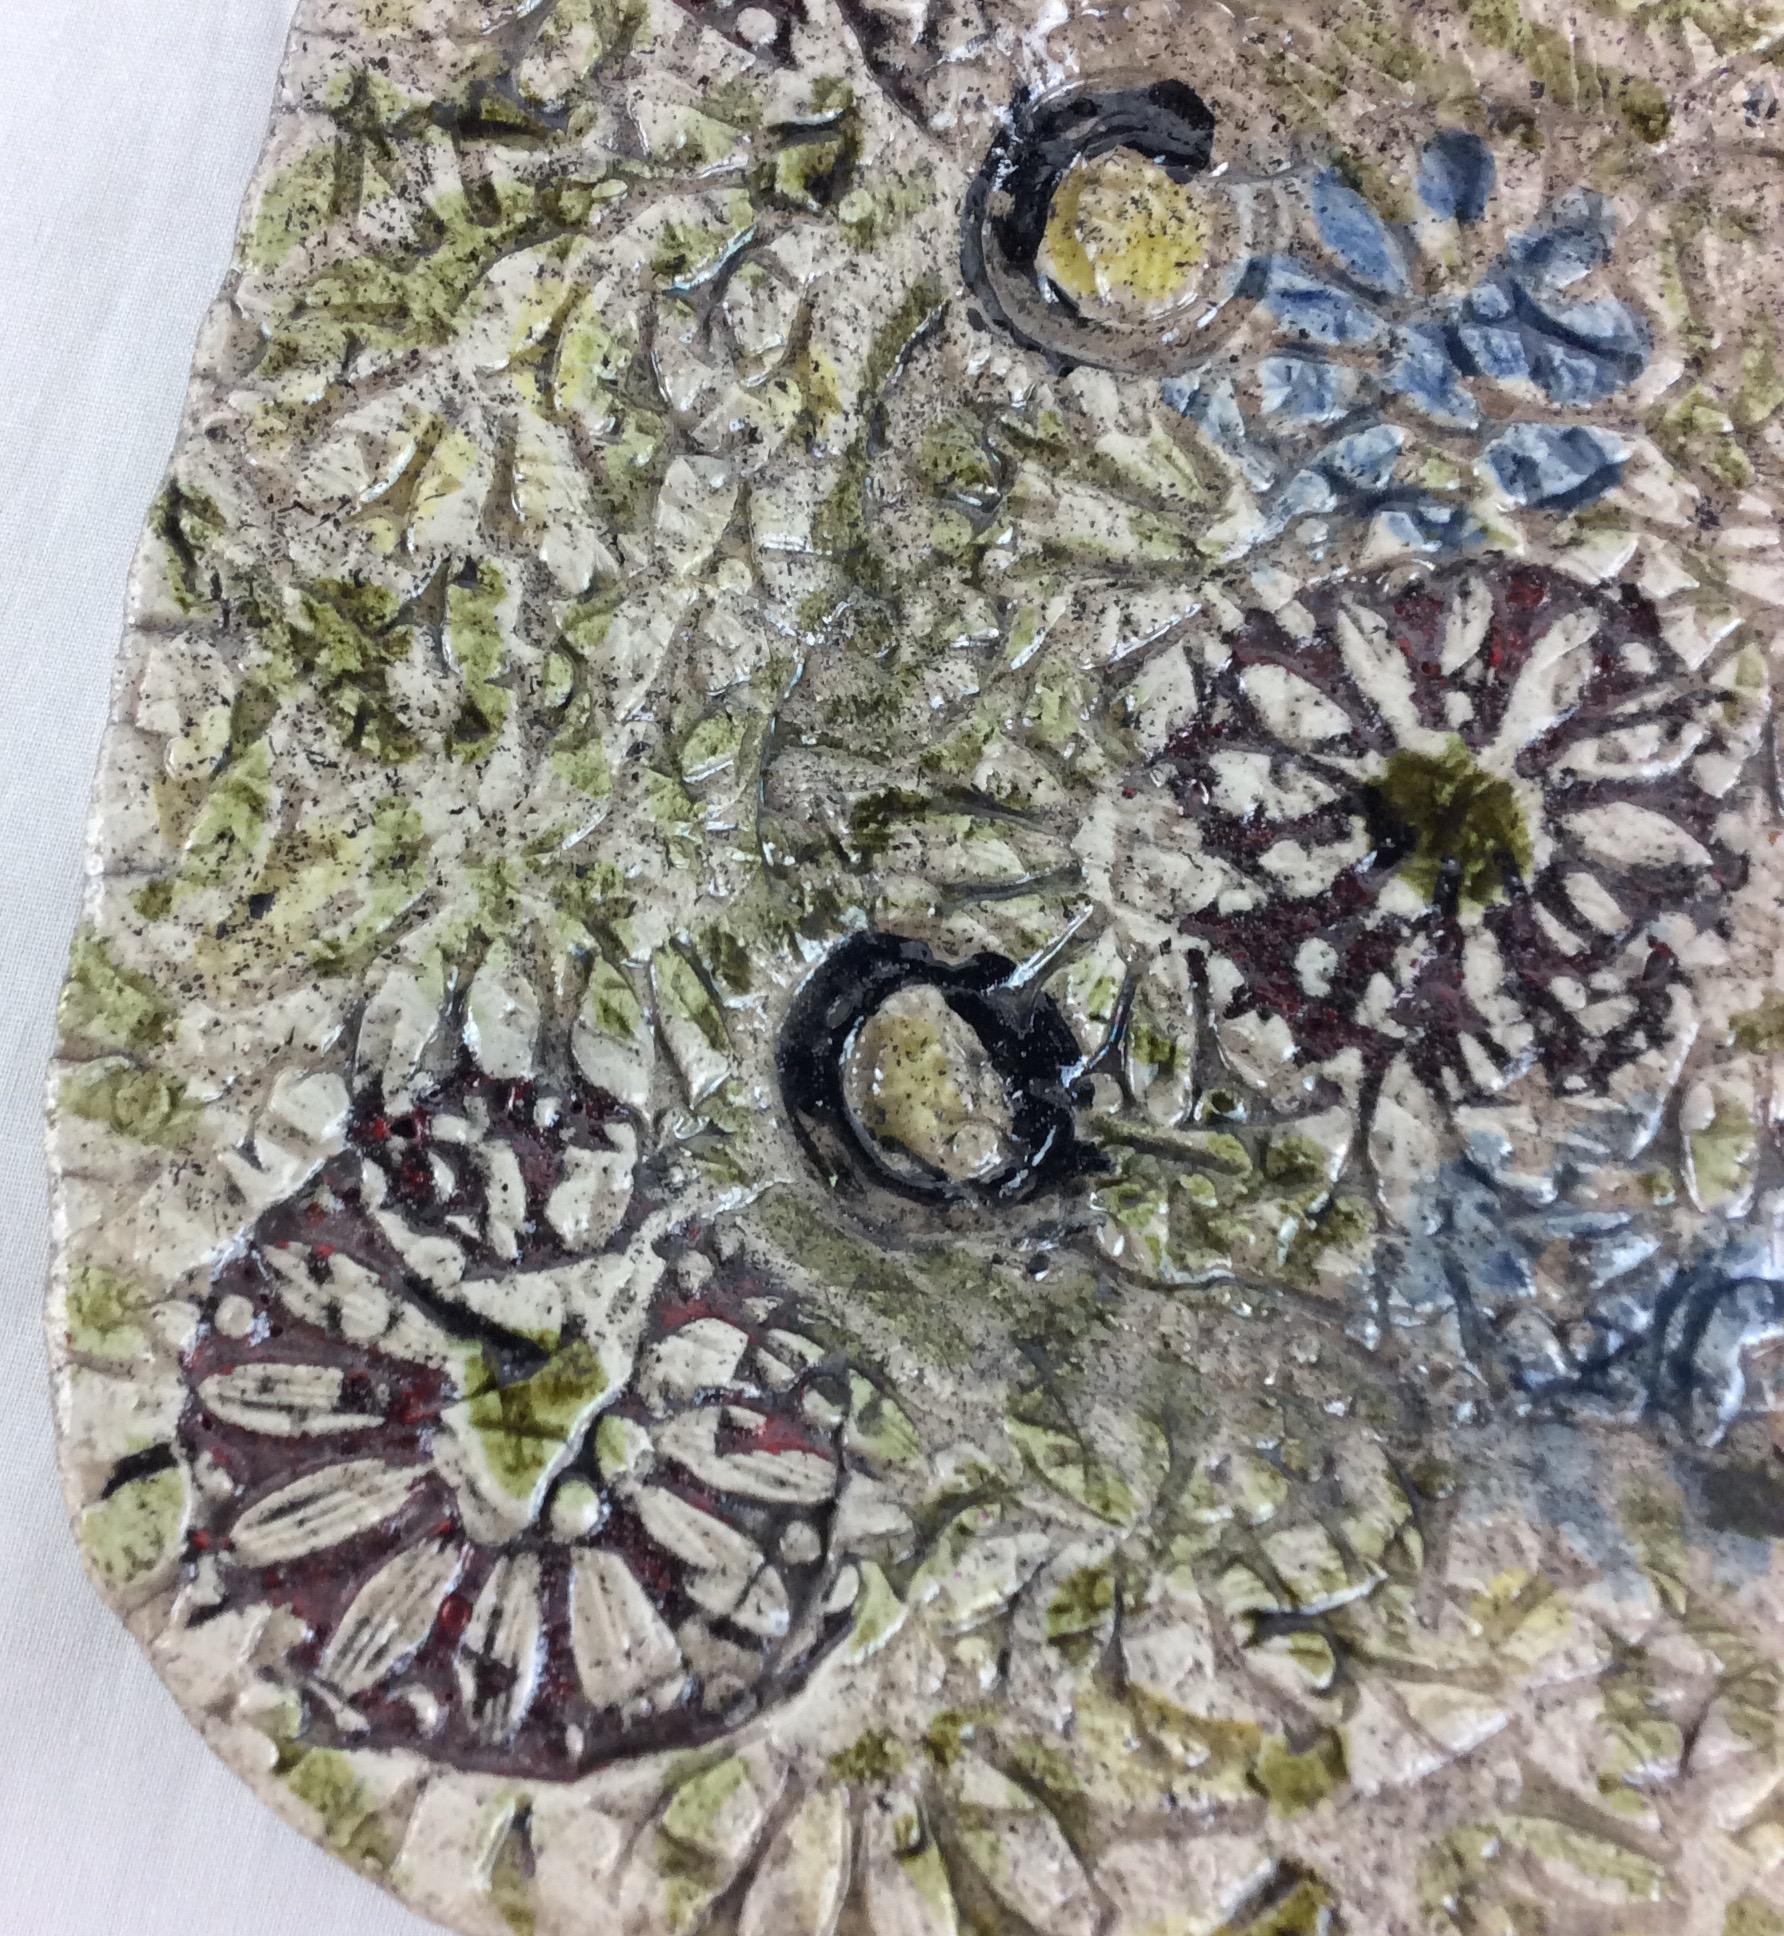 Eine schöne Mitte des Jahrhunderts Französisch dekorative Platte oder große vide poche. Der offensichtlich sehr begabte Keramiker hat Texturen verwendet, die an ein Blumengemälde erinnern. Die wundervollen Formen und Farben auf dem beigen